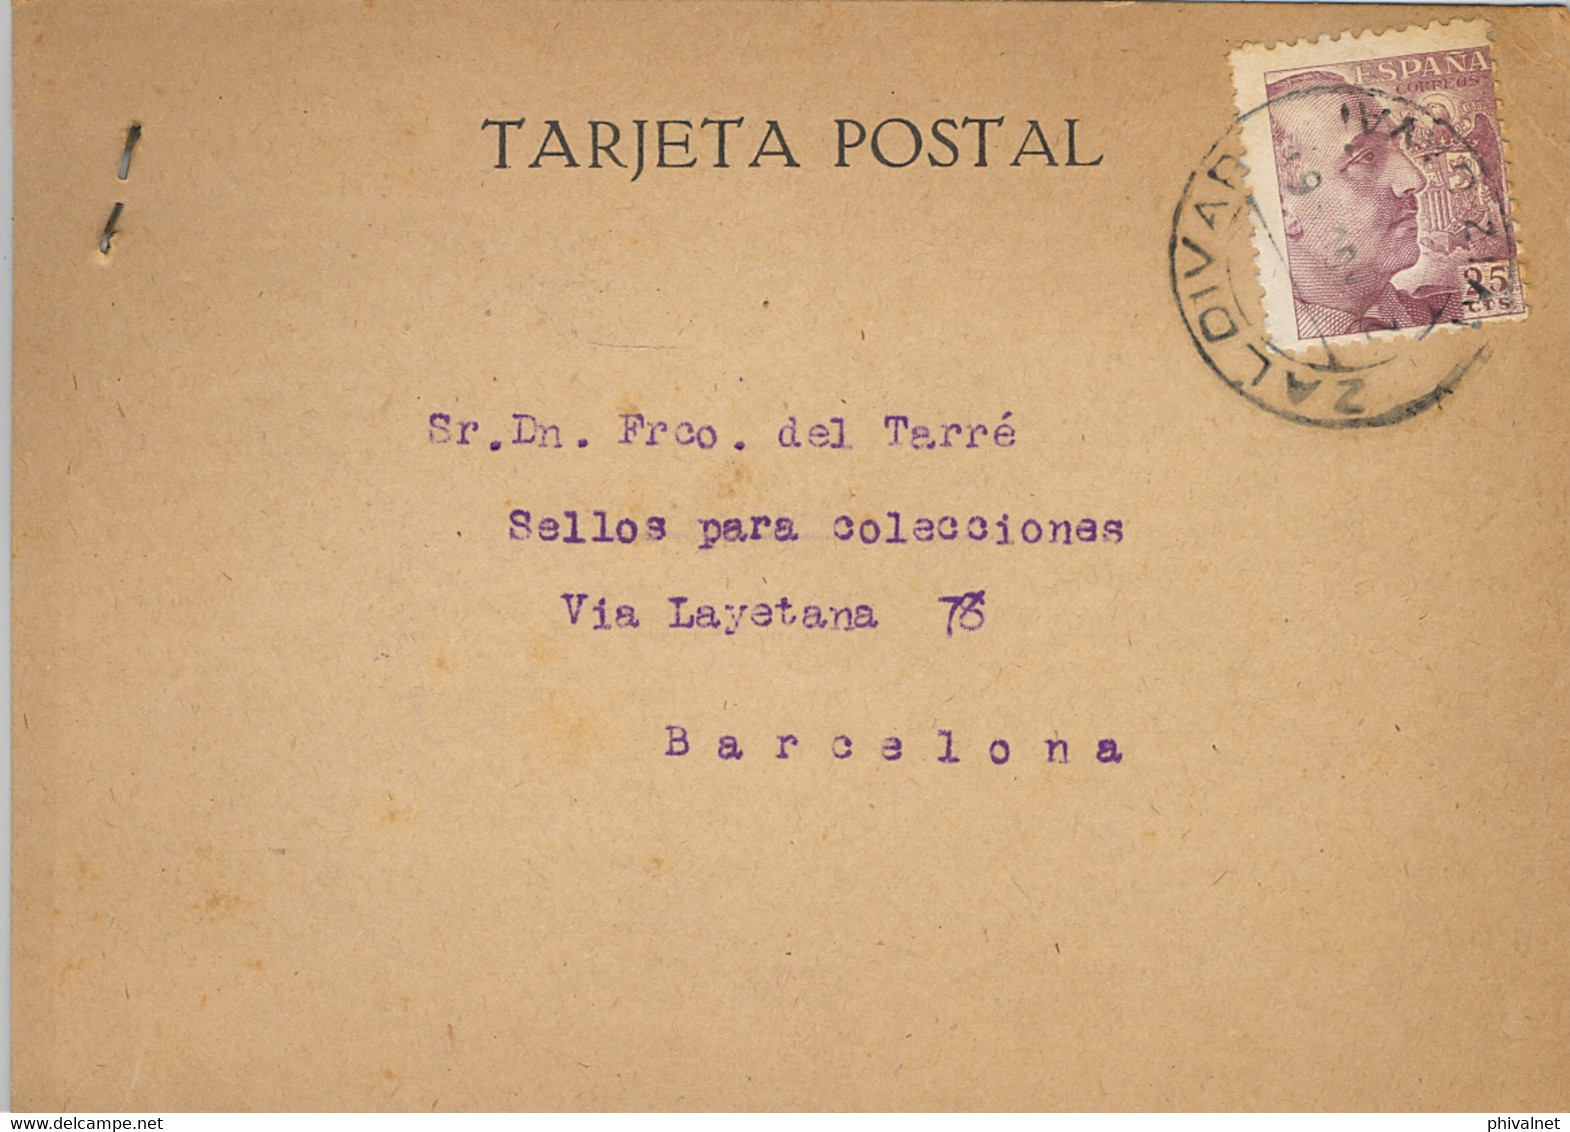 1946 VIZCAYA , T.P. CIRCULADA ENTRE ZALDIVAR Y BARCELONA , DIRIGIDA A FRANCISCO DEL TARRÉ - Briefe U. Dokumente